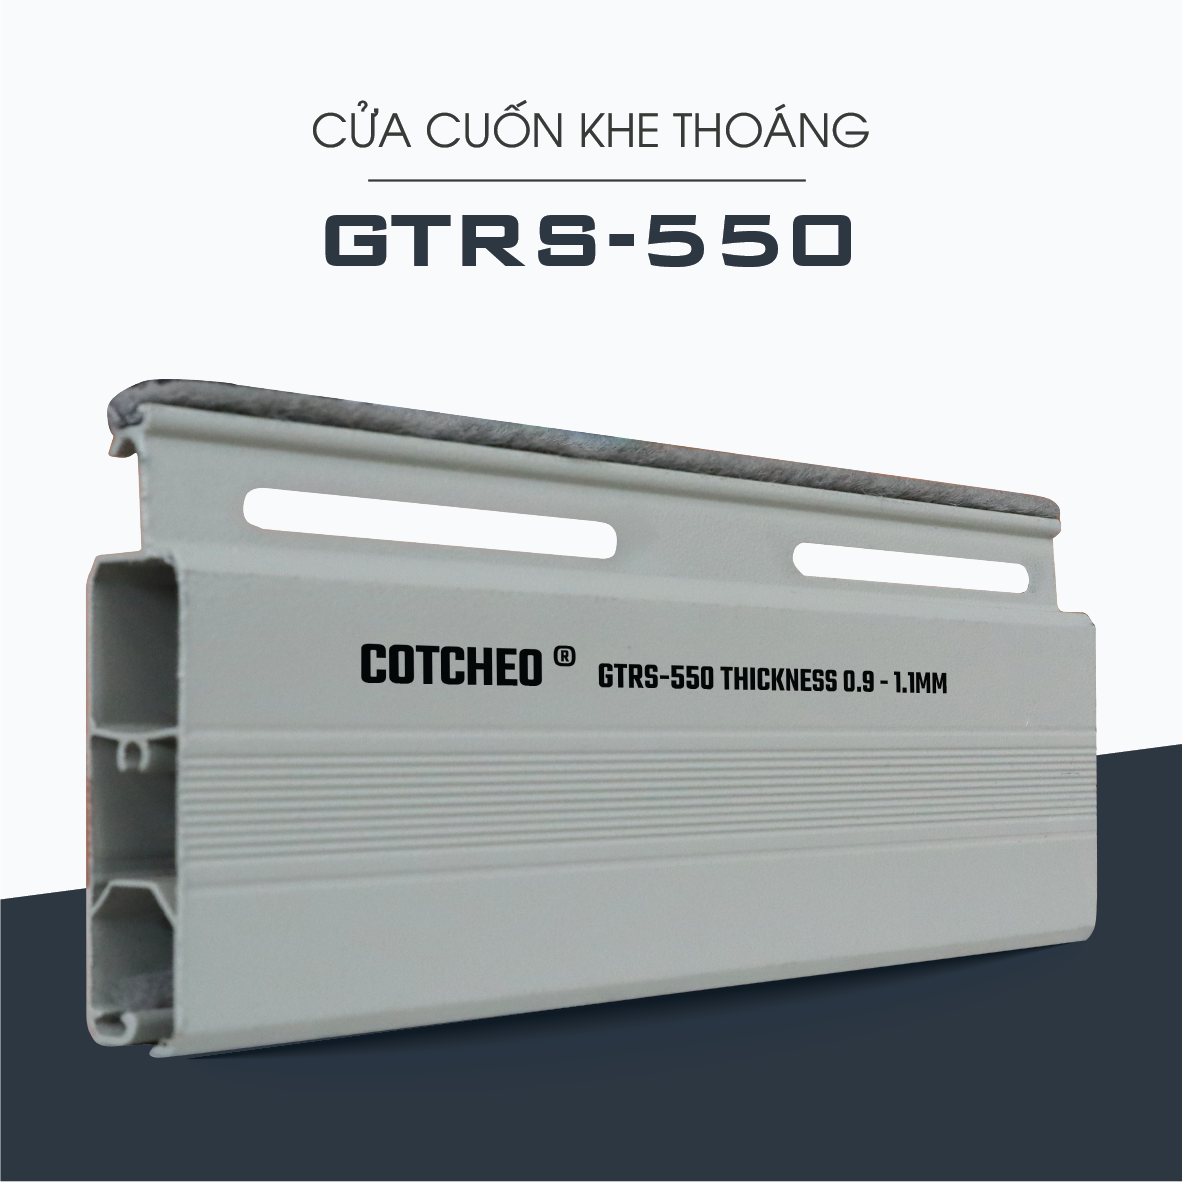 GTRS-550